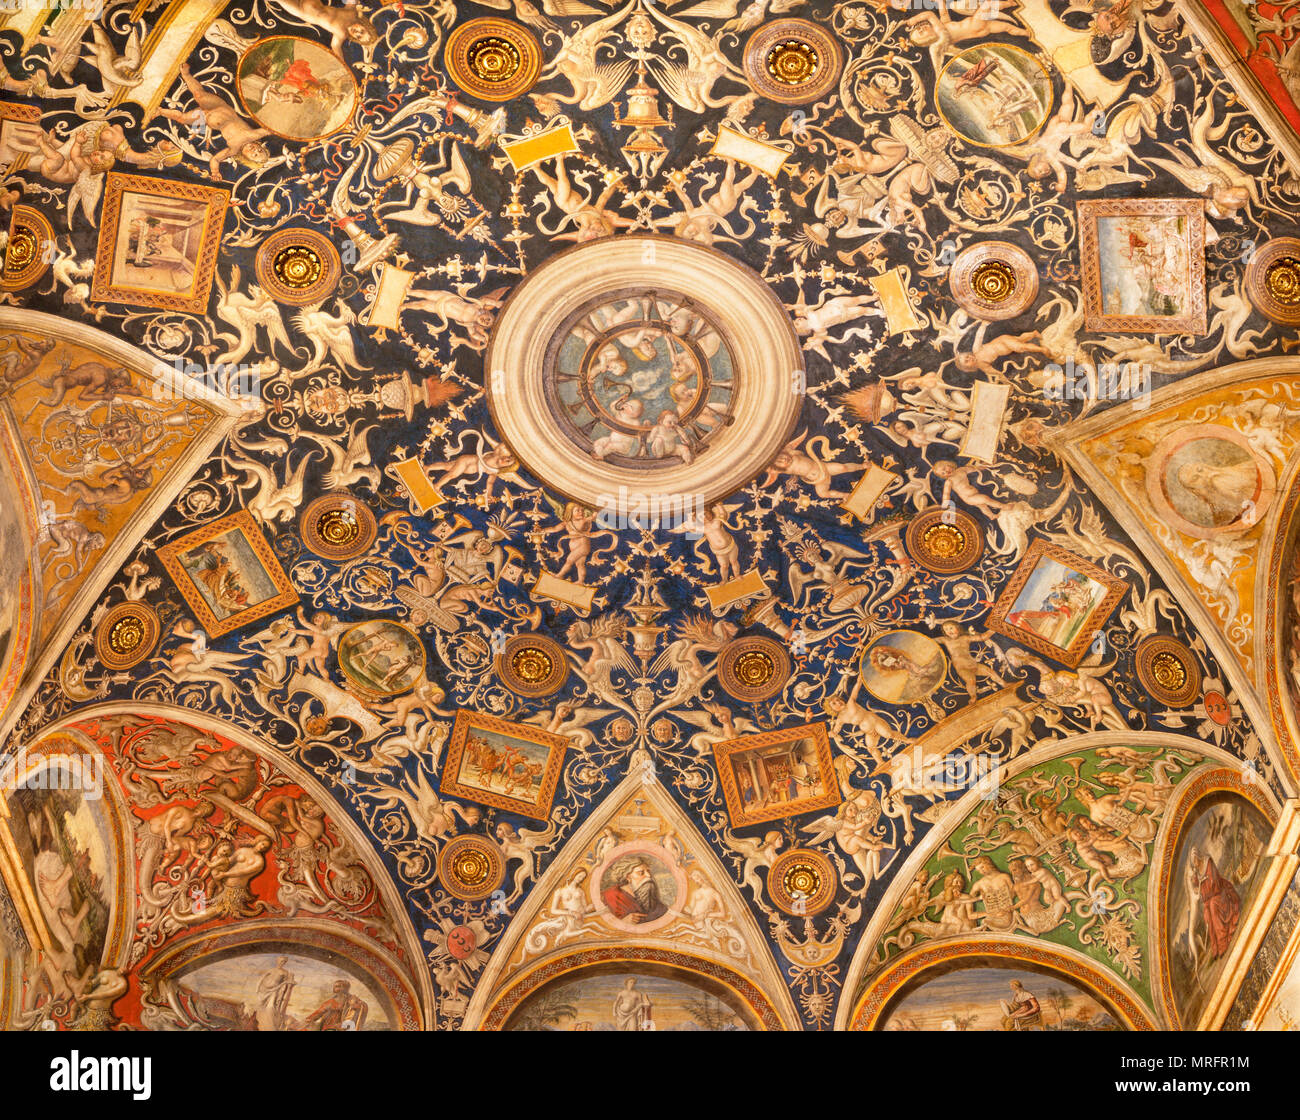 Parme, Italie - 17 avril 2018 : Le ceilig fresque (grotesque) de la Camera di San Paolo par Alessandro Araldi (1514). Banque D'Images